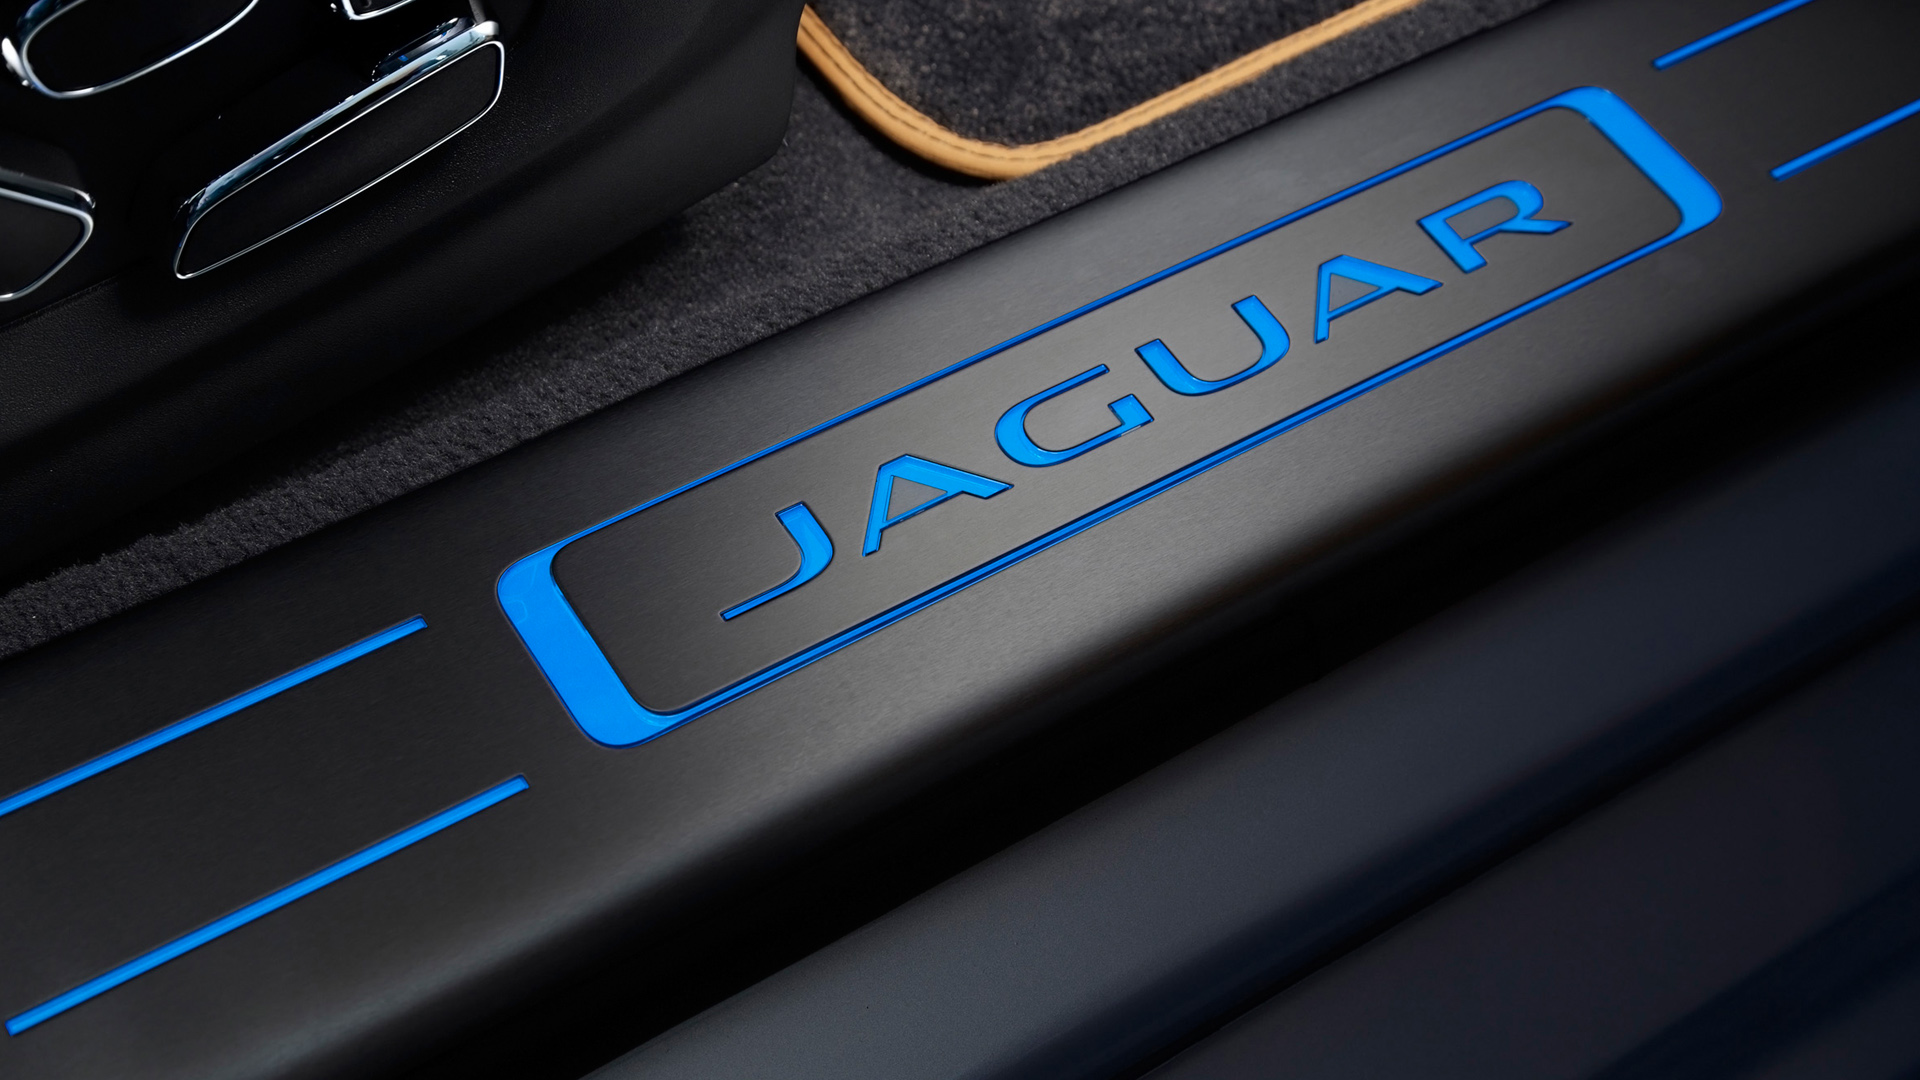 Jaguar Car Logo 4k Wallpaper Download